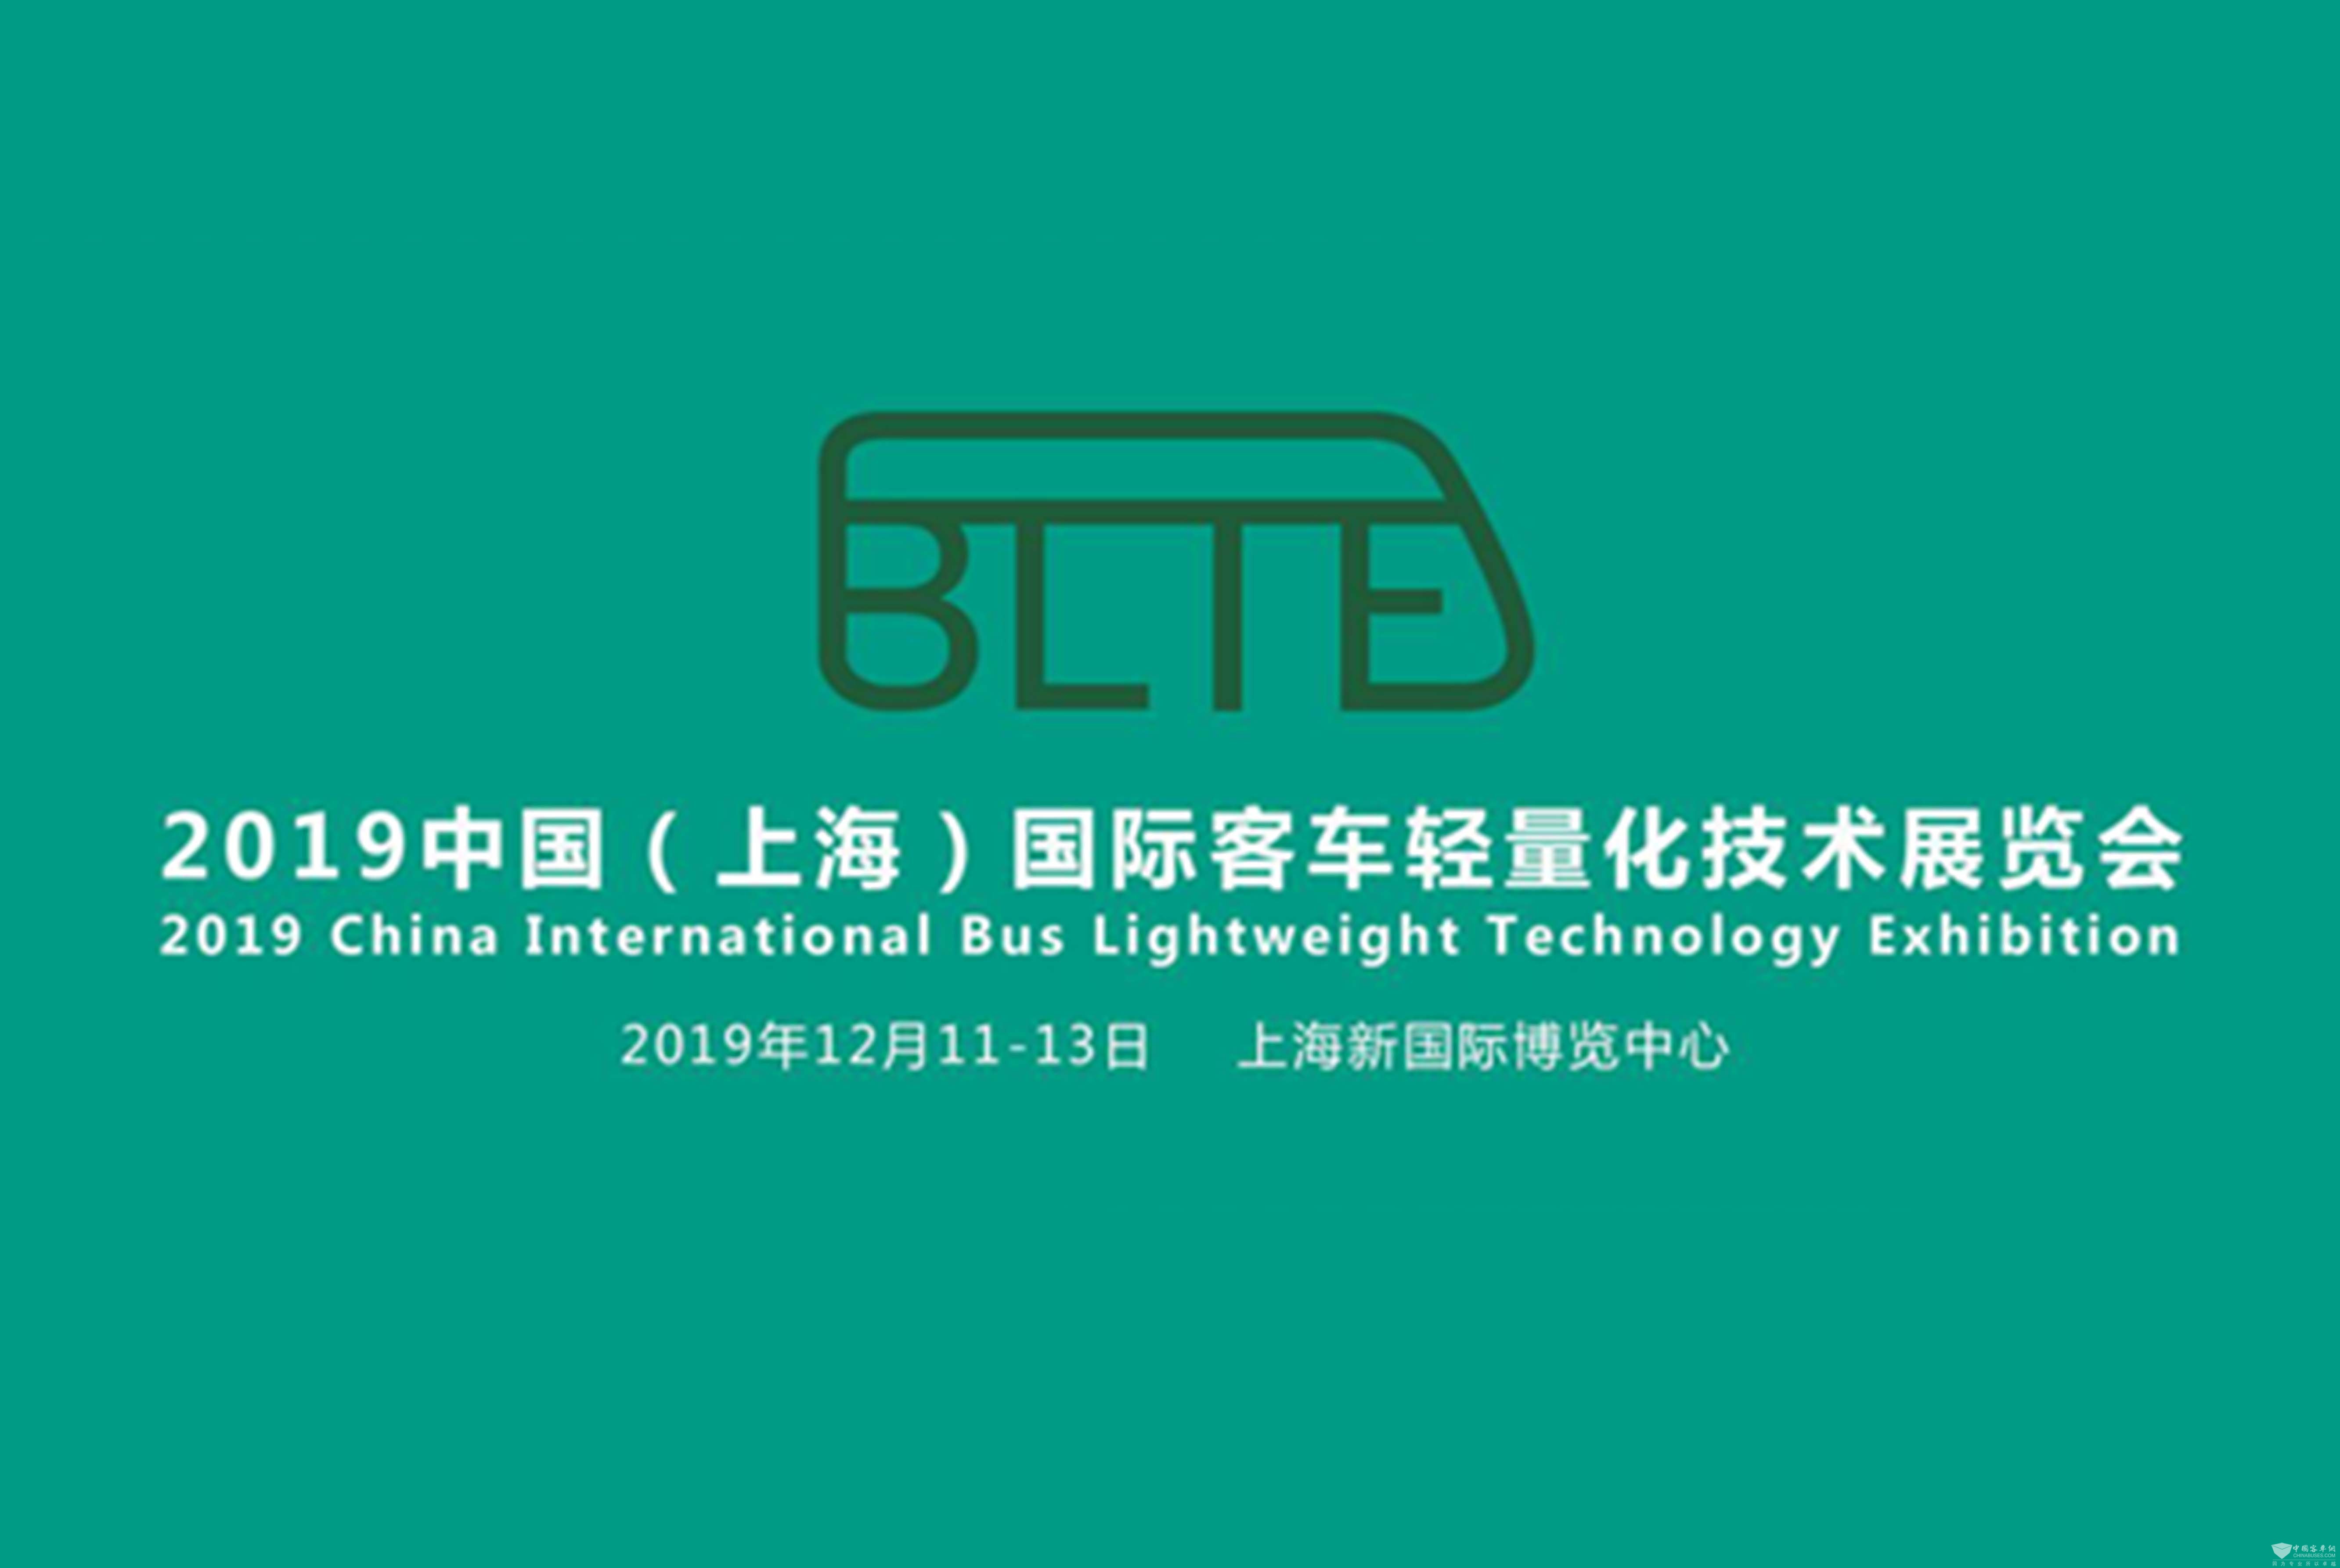 前沿科技登陆BLTE上海客车轻量化技术展 看新材料新技术如何助推轻量化